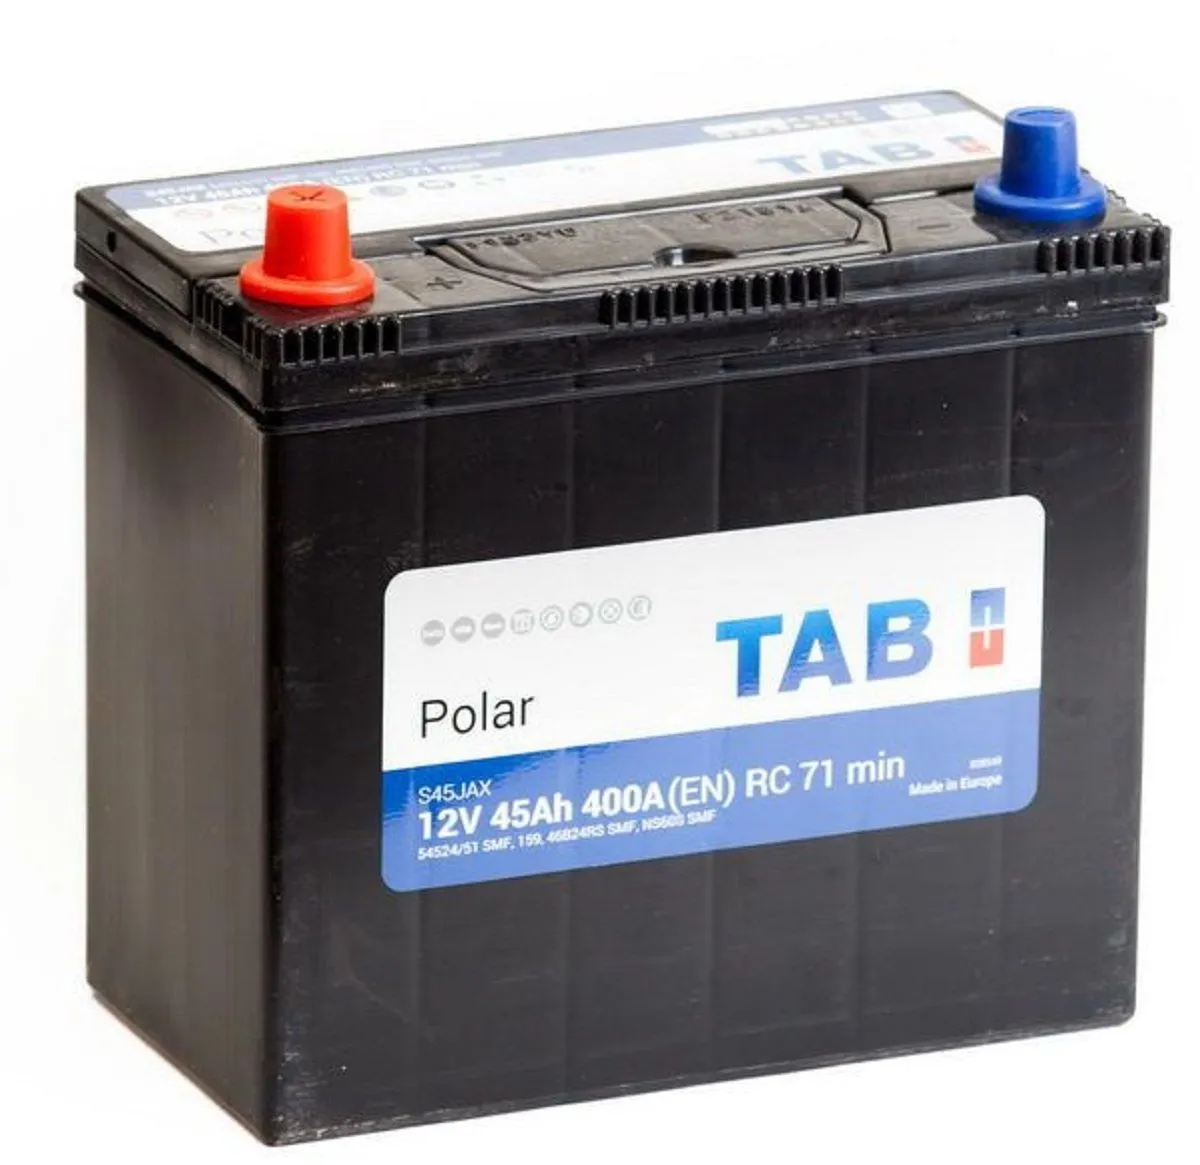 Аккумулятор автомобильный TAB Polar 6СТ-45.1 (54524/51) яп ст/тонк.кл.с переходн.